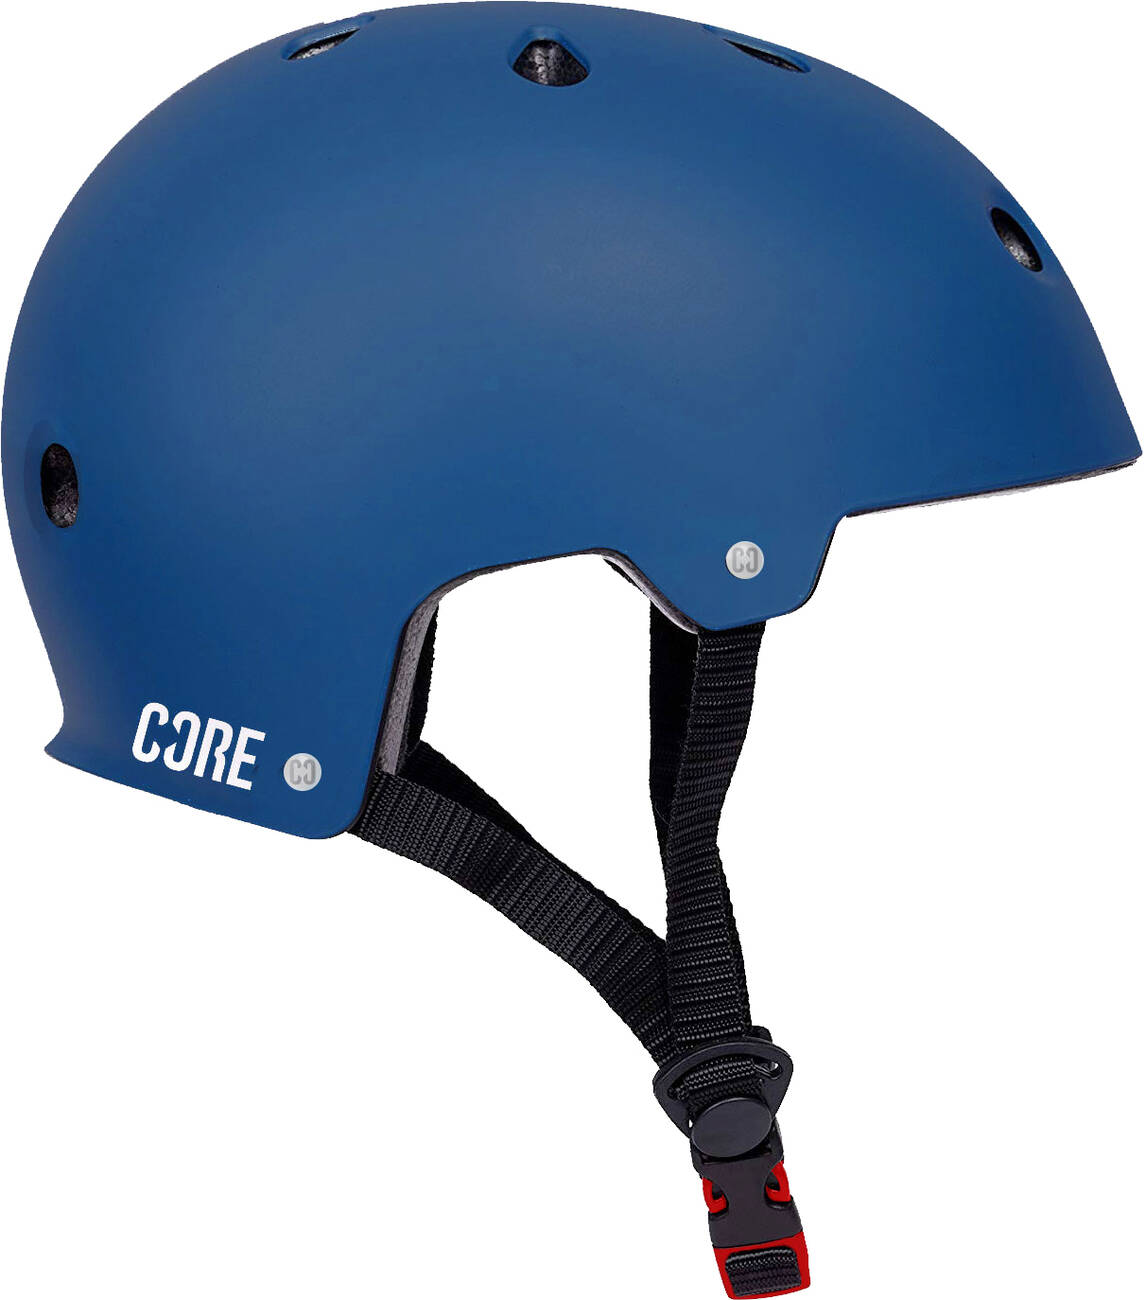 CORE Action Sports Helm Skate und Fahrradhelm navy blau